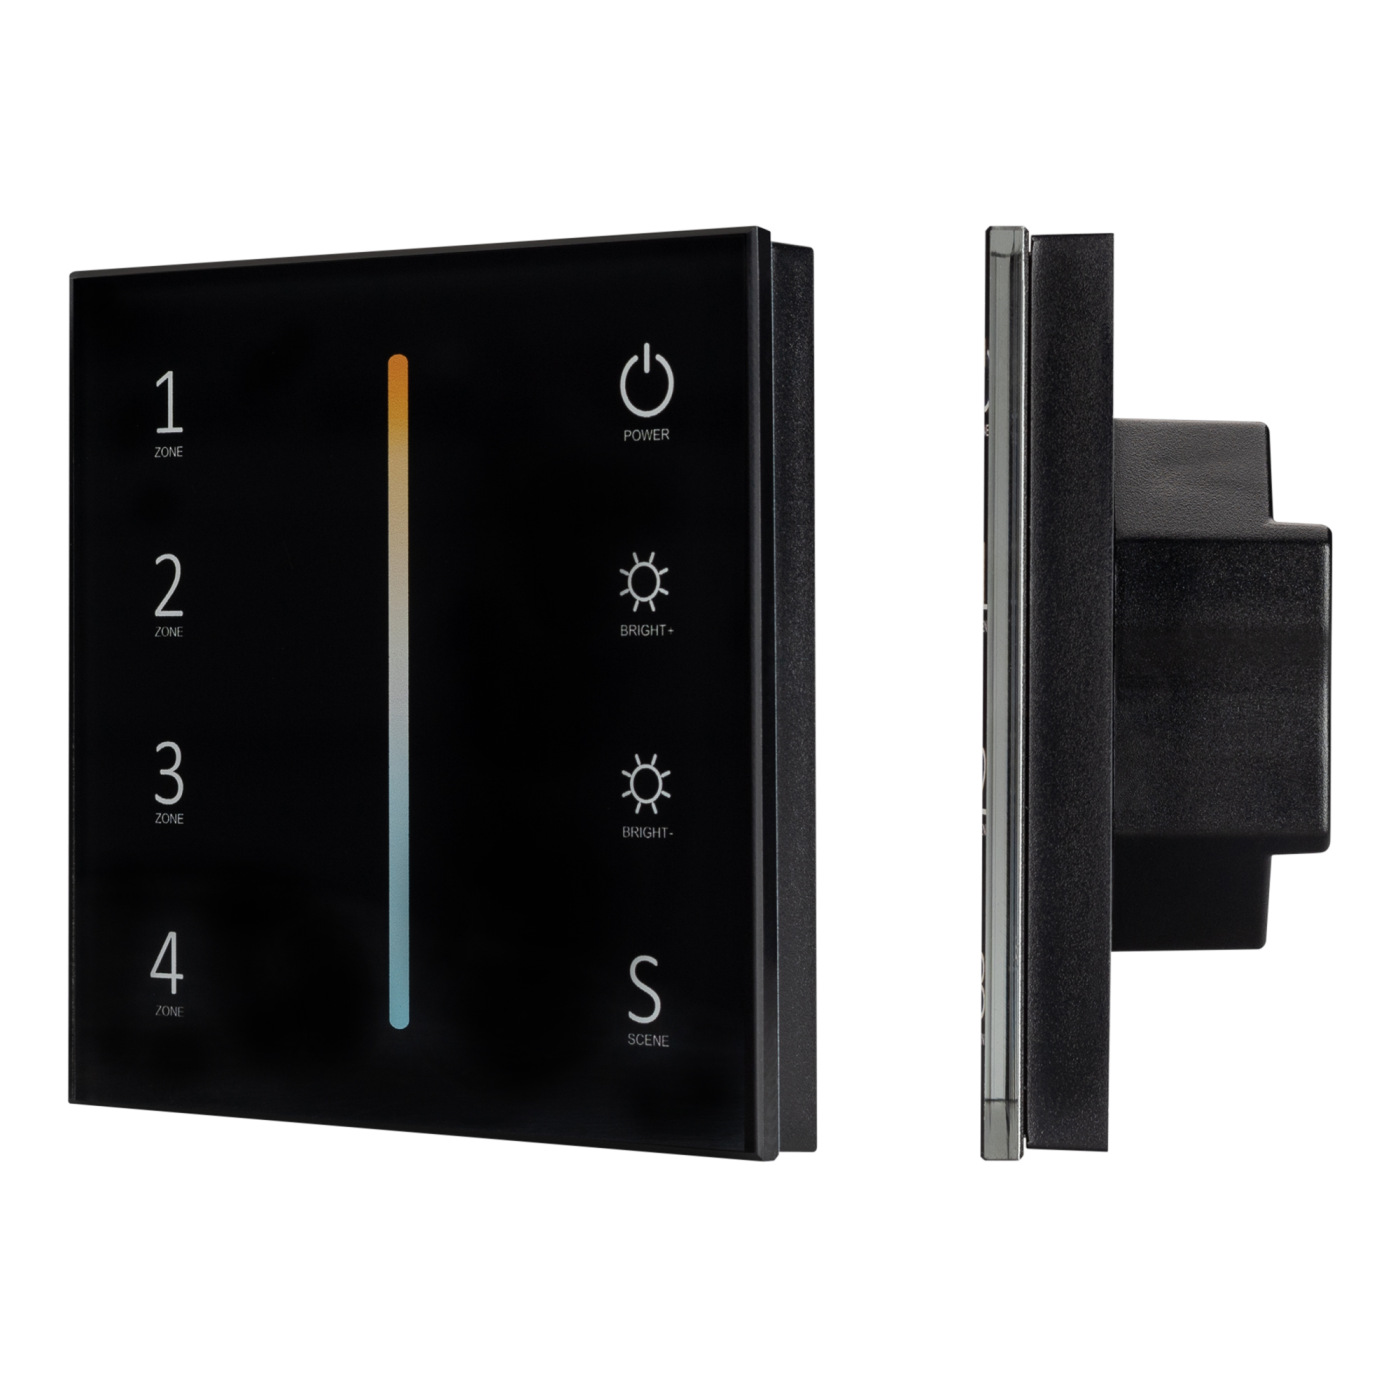 Панель Sens SMART-P43-MIX Black (230V, 4 зоны, 2.4G) (Arlight, IP20 Пластик, 5 лет) стеклянная масленка smart solutions